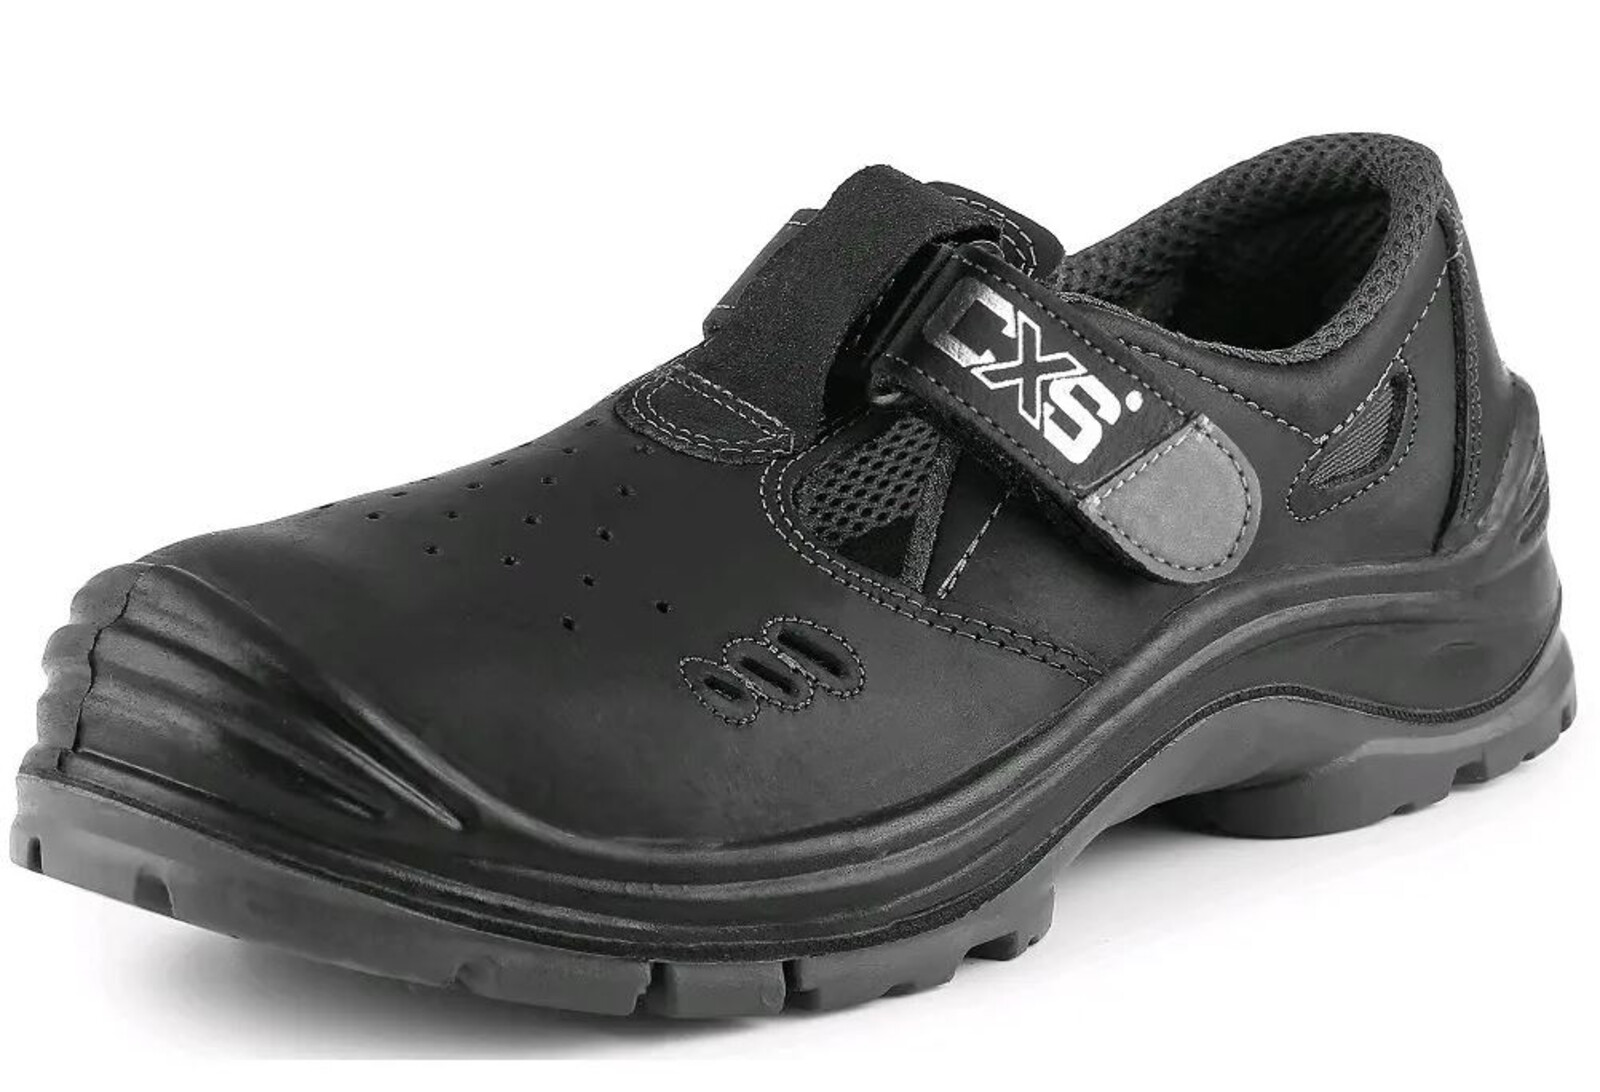 Bezpečnostné sandále CXS Safety Steel Iron S1 - veľkosť: 38, farba: čierna